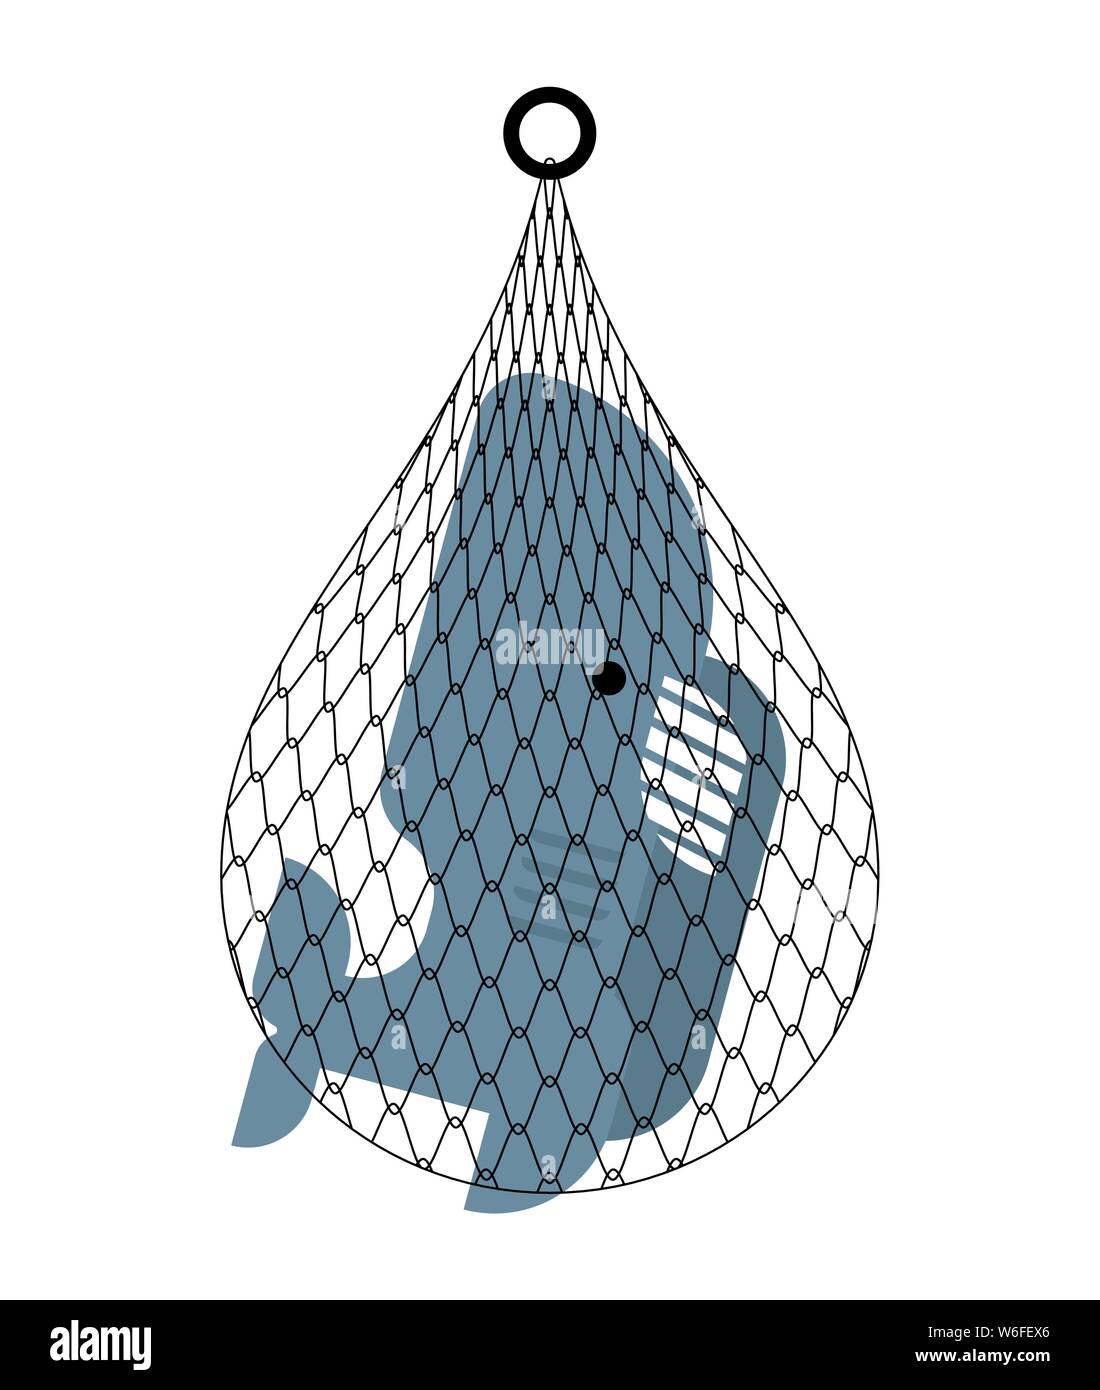 shark in net. Sea predator catch. vector illustration Stock Vector